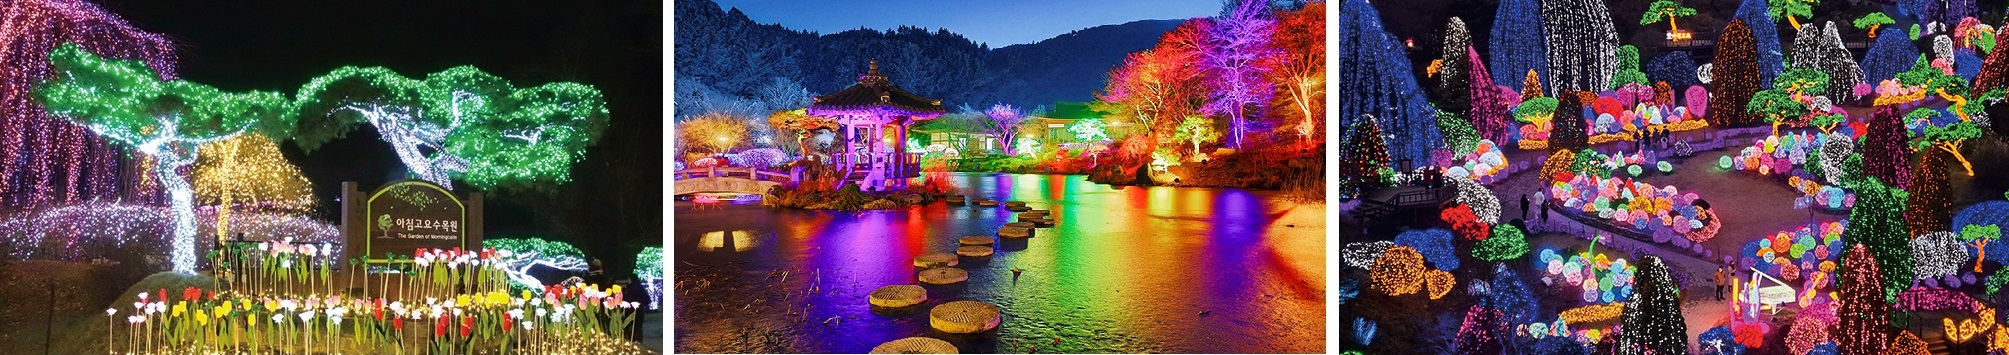 가평 아침고요수목원에서는 12월 9일부터 2023년 3월 19일까지 ‘오색별빛정원전’을 개최한다. 